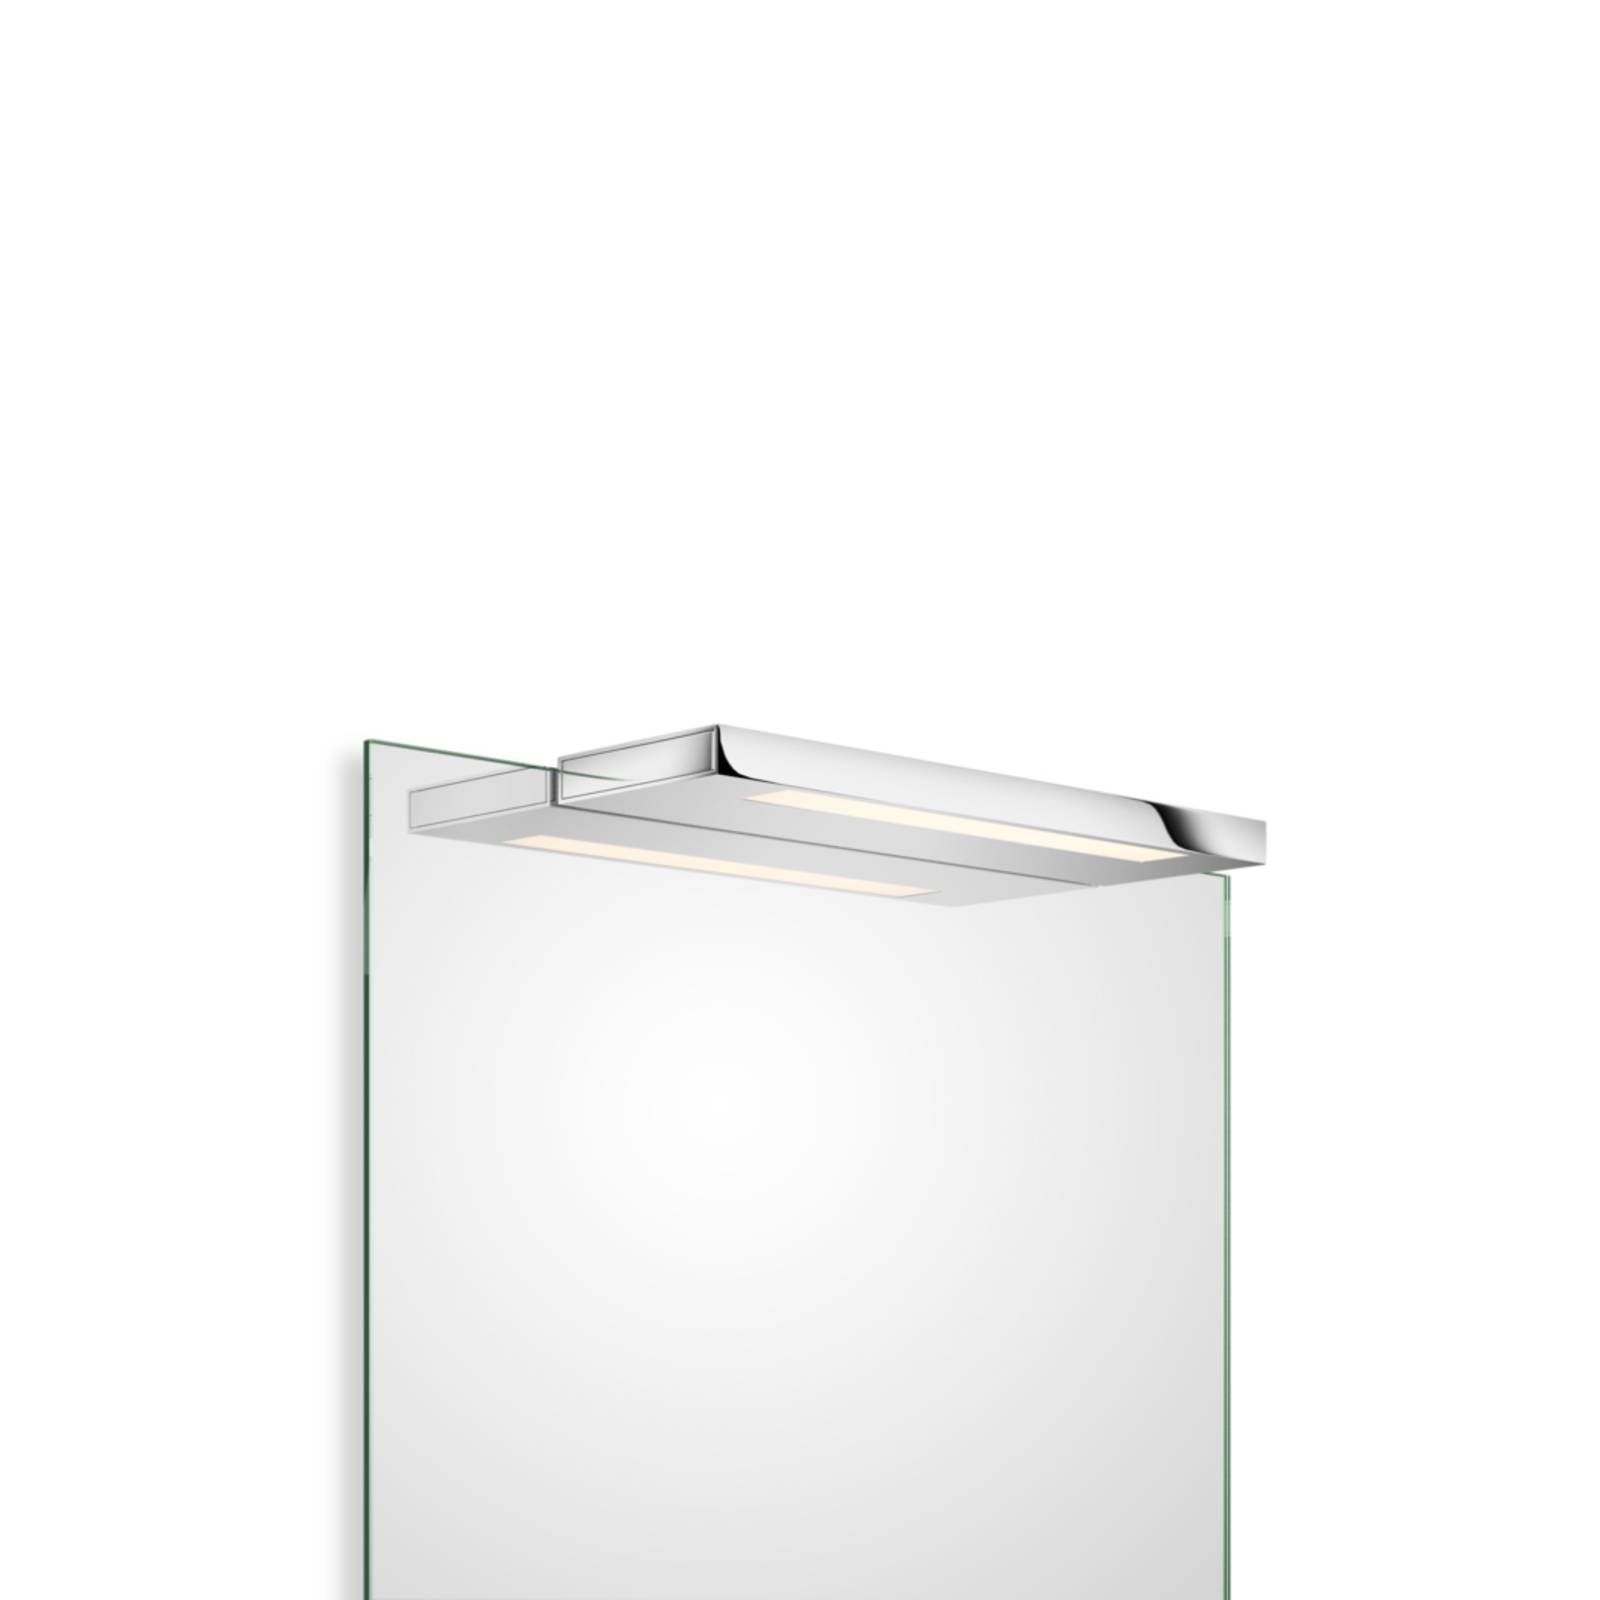 Decor Walther Slim zrkadlové LED chróm 34 cm, Kúpeľňa, kov, akryl, 16.4W, L: 34 cm, K: 2cm